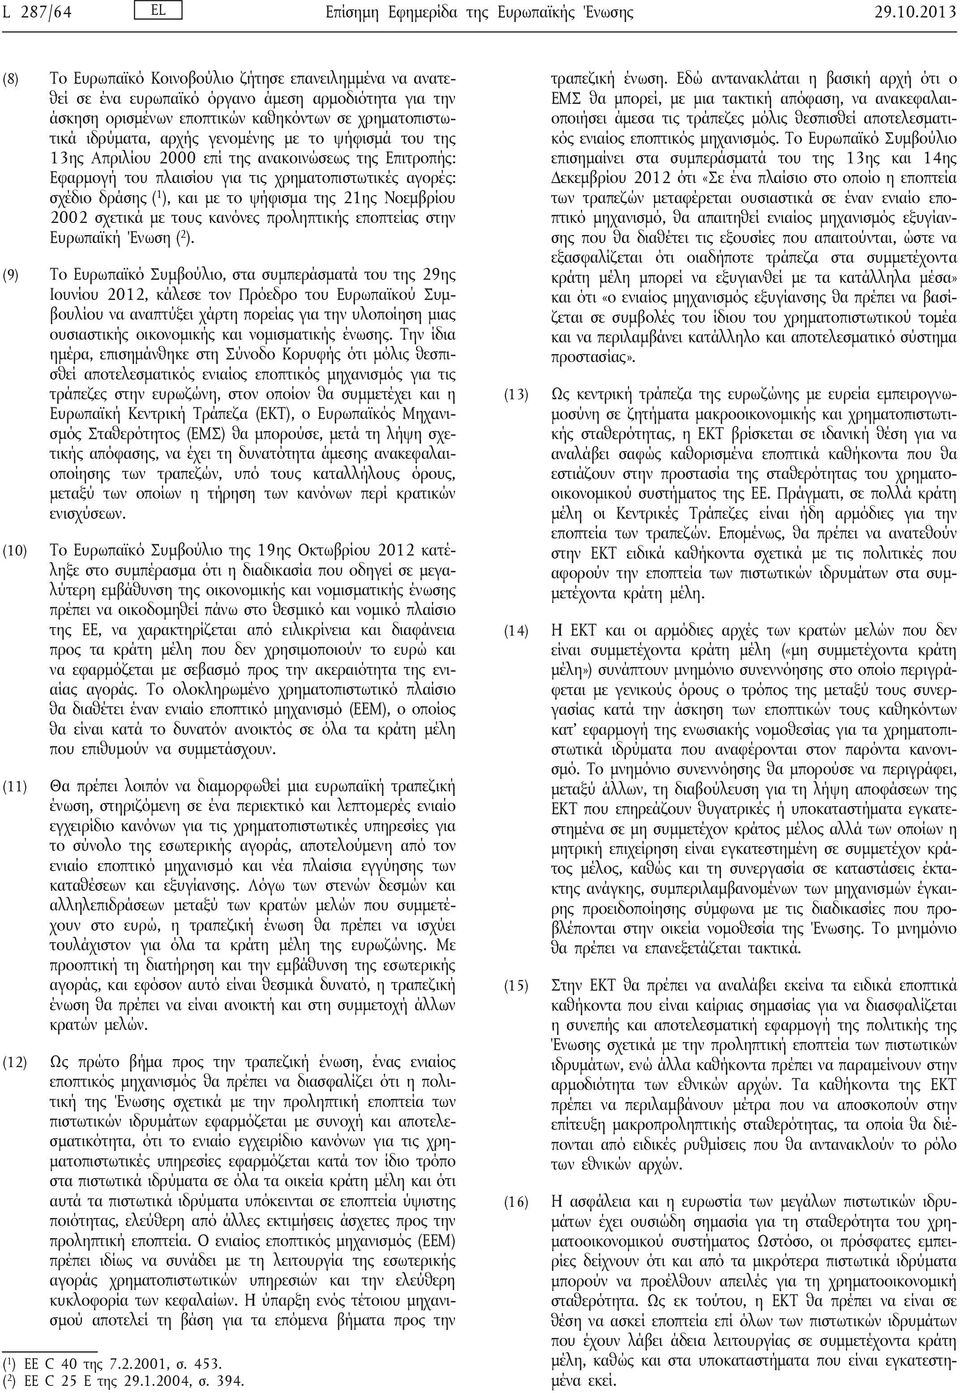 γενομένης με το ψήφισμά του της 13ης Απριλίου 2000 επί της ανακοινώσεως της Επιτροπής: Εφαρμογή του πλαισίου για τις χρηματοπιστωτικές αγορές: σχέδιο δράσης ( 1 ), και με το ψήφισμα της 21ης